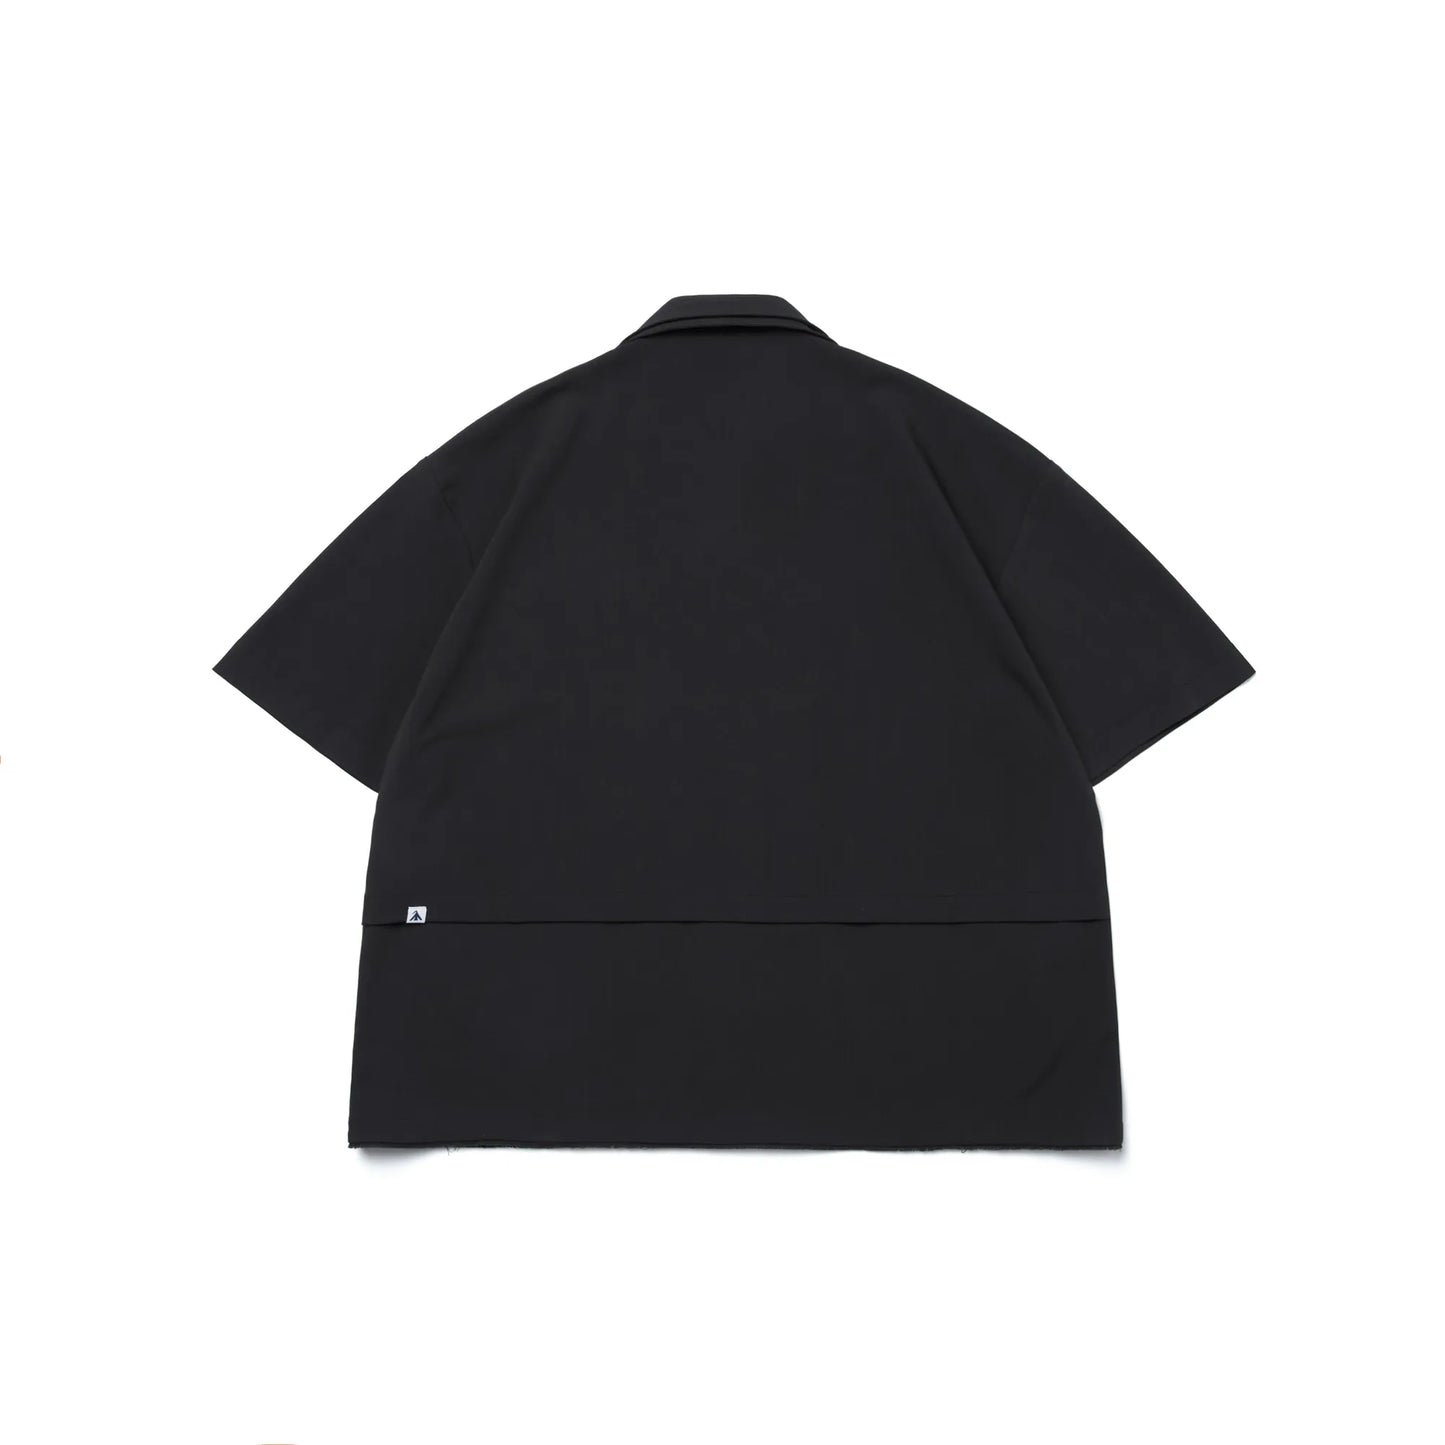 Melsign - Dual Weave Shirt - Black